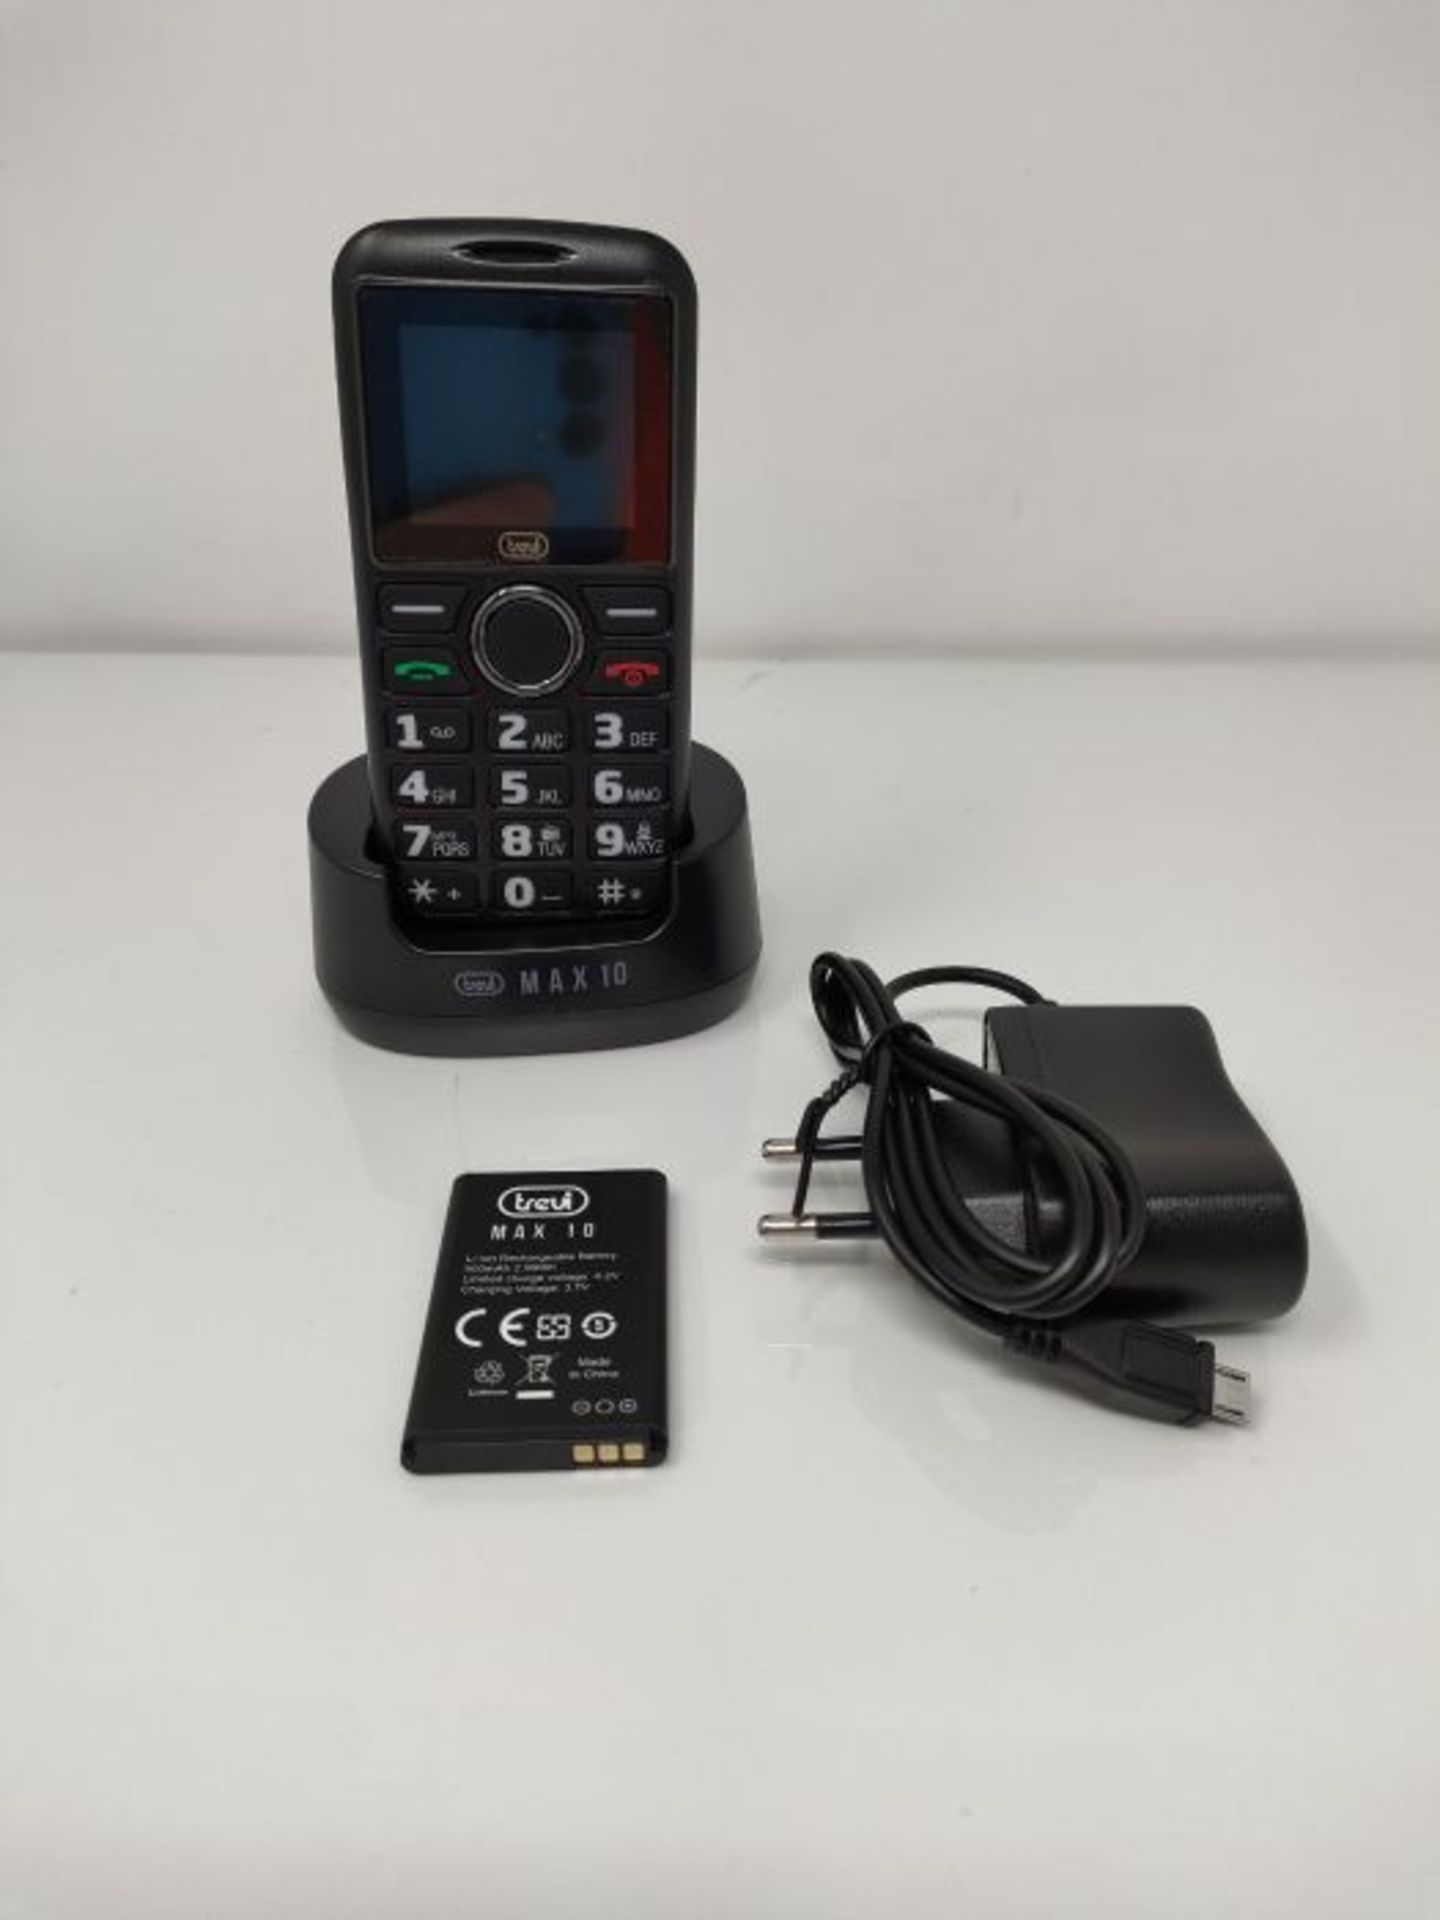 Trevi MAX 10 NERO, TELEFONO CELLULARE PER ANZIANI SENIOR PHONE CON GRANDI TASTI - Image 2 of 2